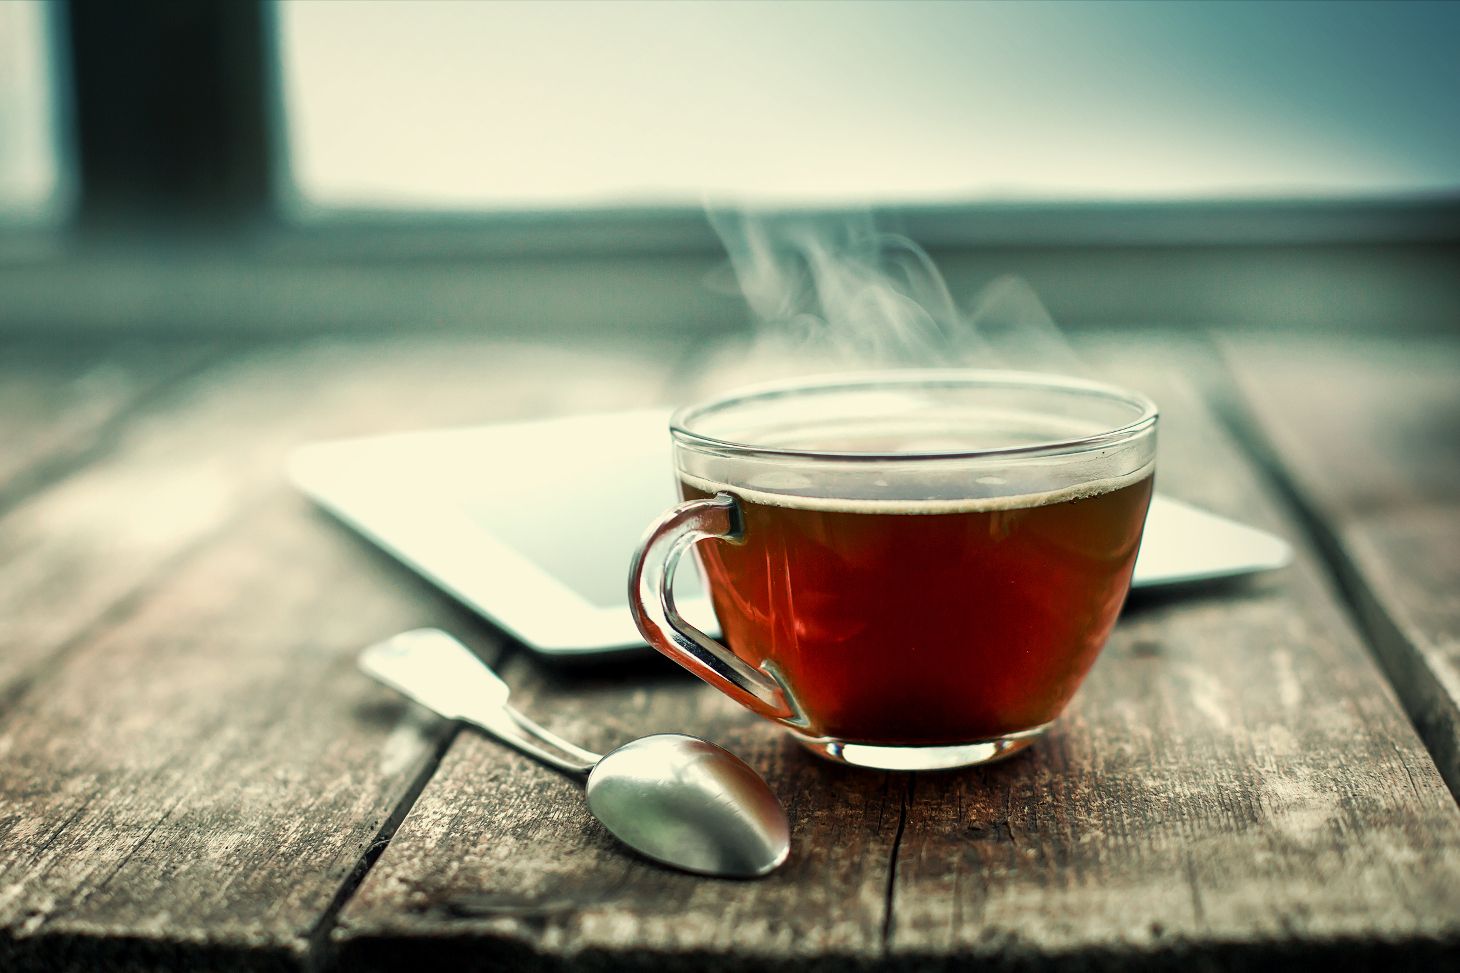 profiter pleinement des antioxydants présents dans le thé